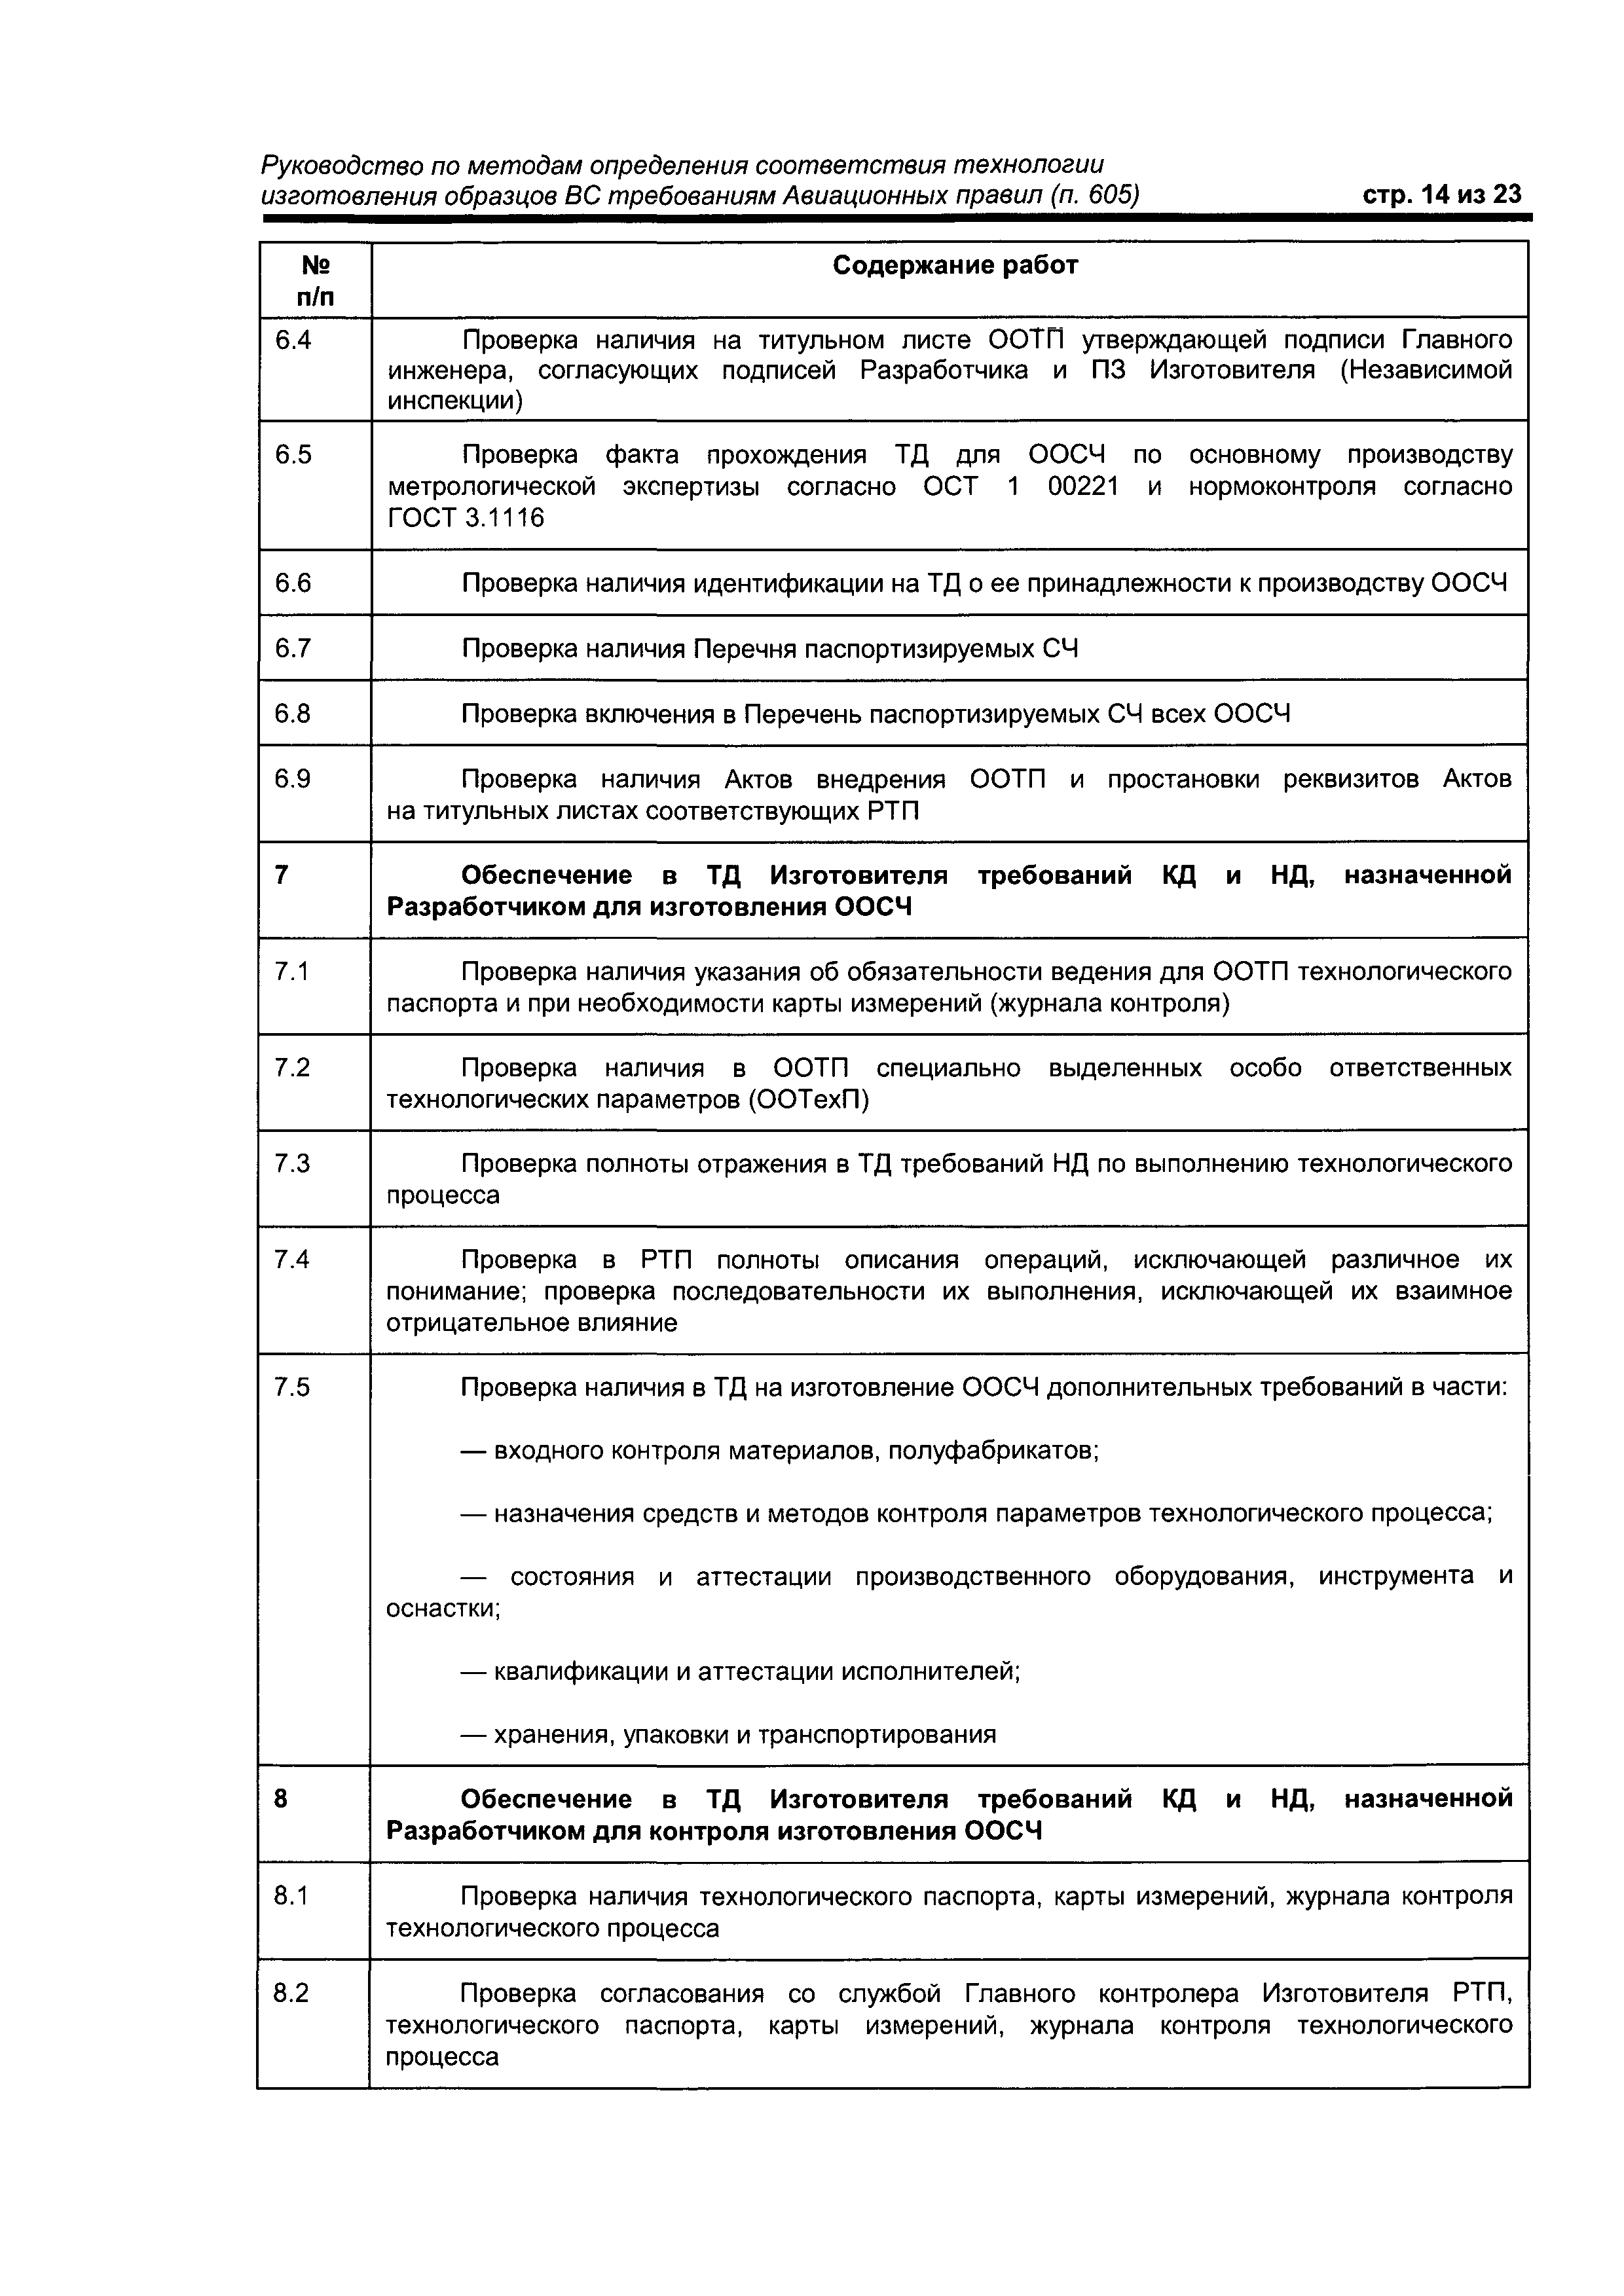 Директивное письмо 1-2000